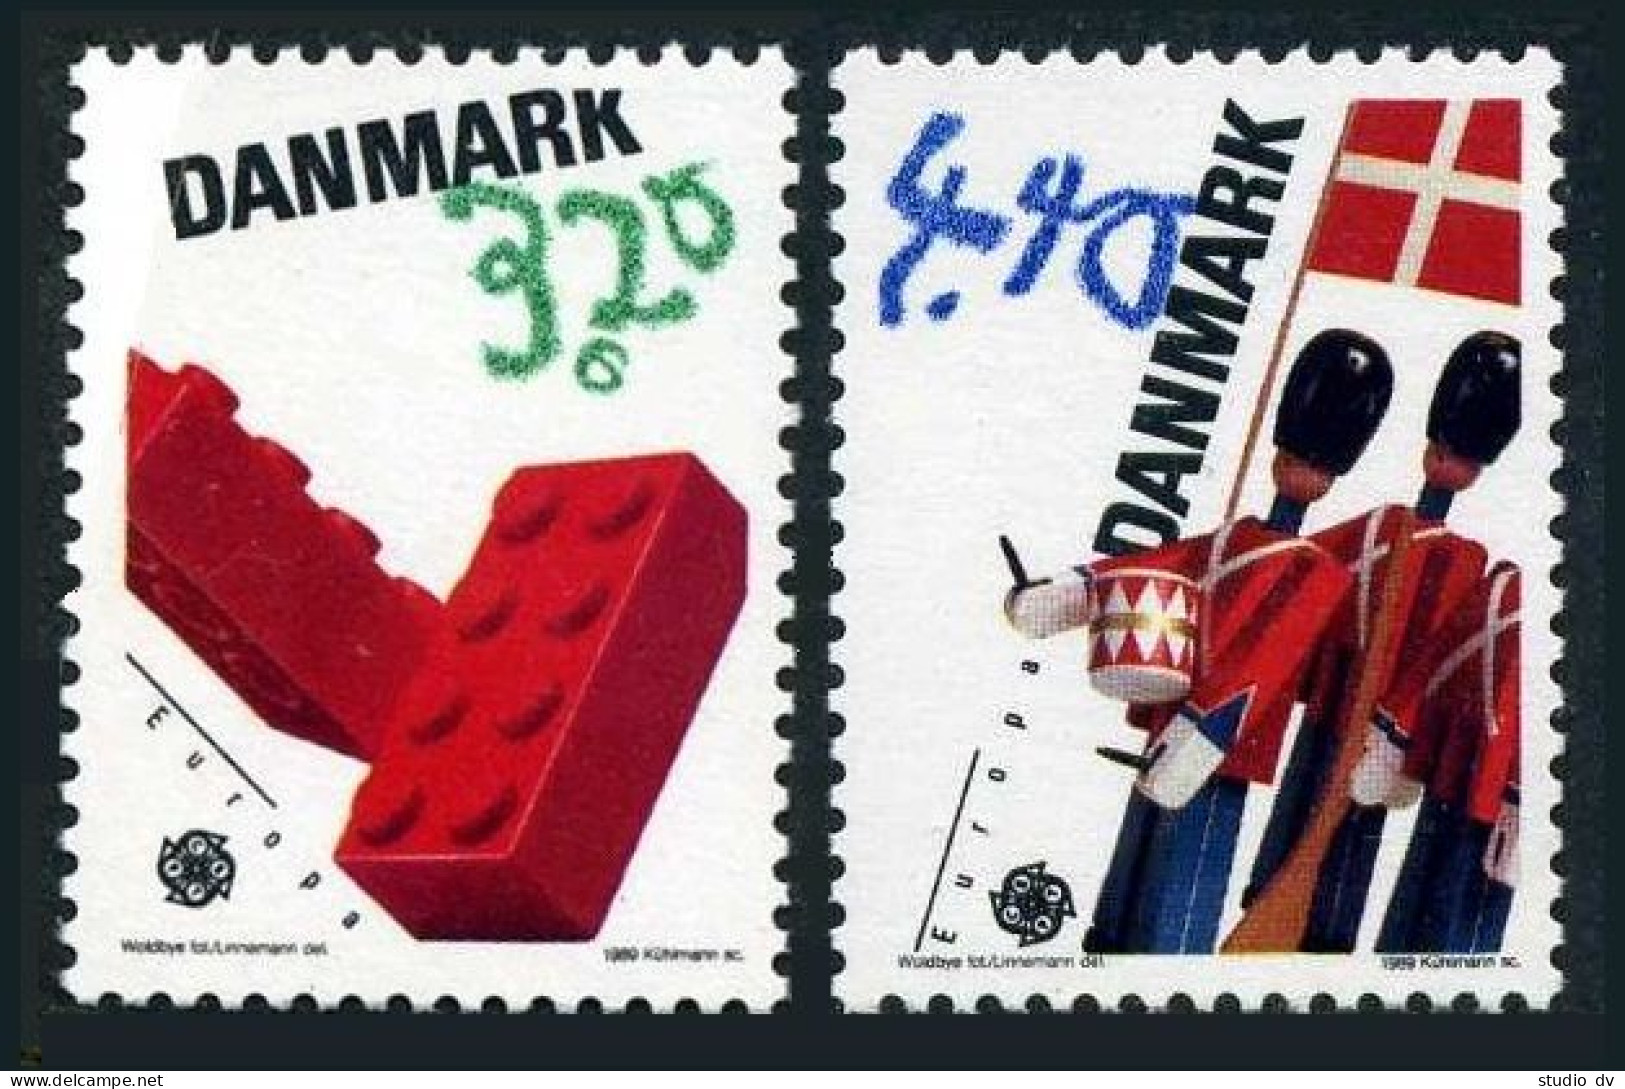 Denmark 871-872, MNH. Michel 950-951. EUROPE CEPT-1989, Children Toys. - Ungebraucht